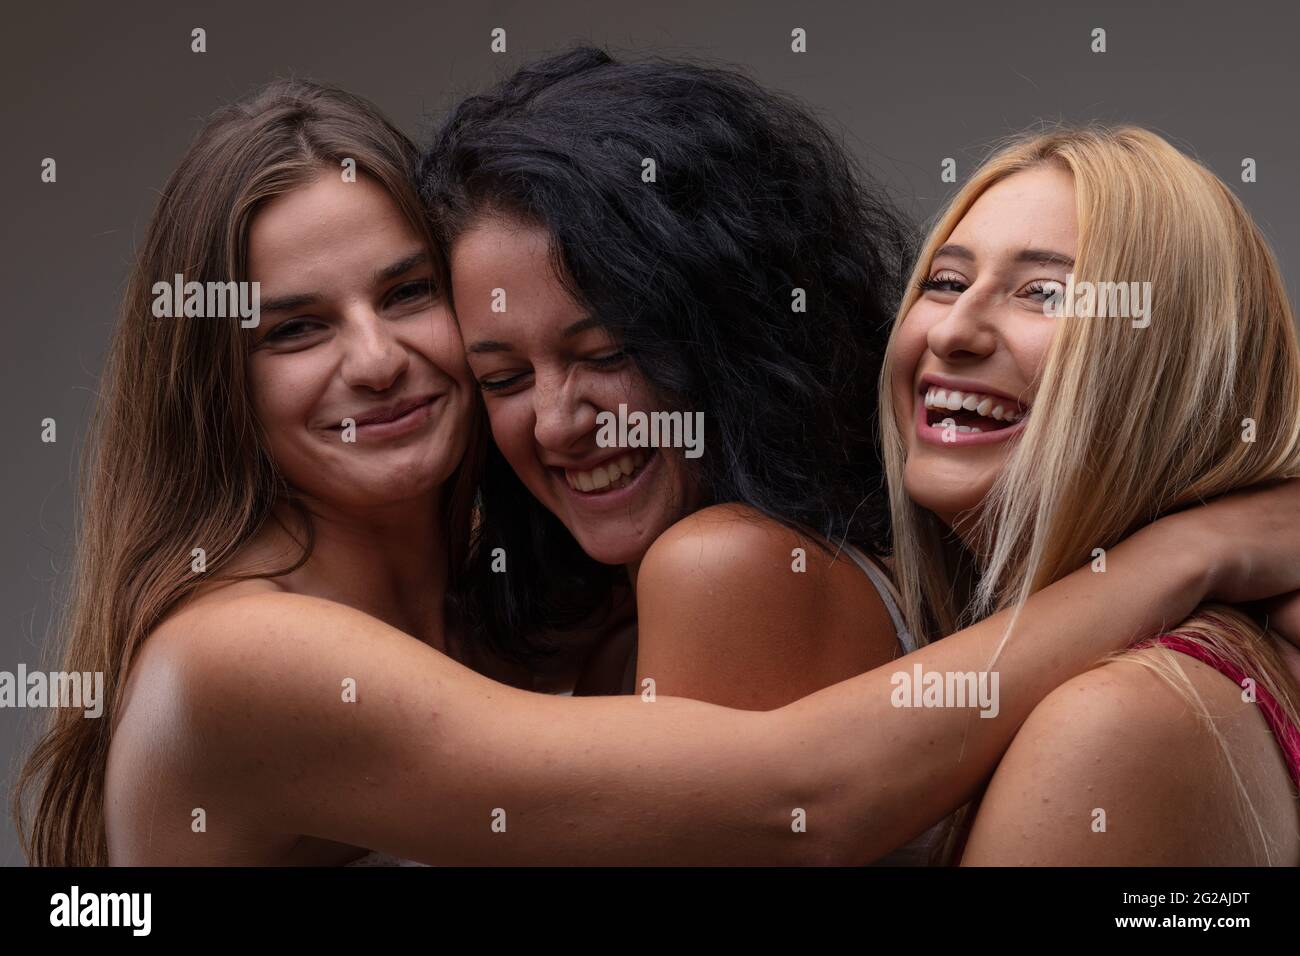 Drei sorglose, glückliche junge Frau, die über die Kamera lacht, während sie Arm in Arm in enger Umarmung in einem Kopf-Schultern-Porträt gegen einen grauen Stu posieren Stockfoto